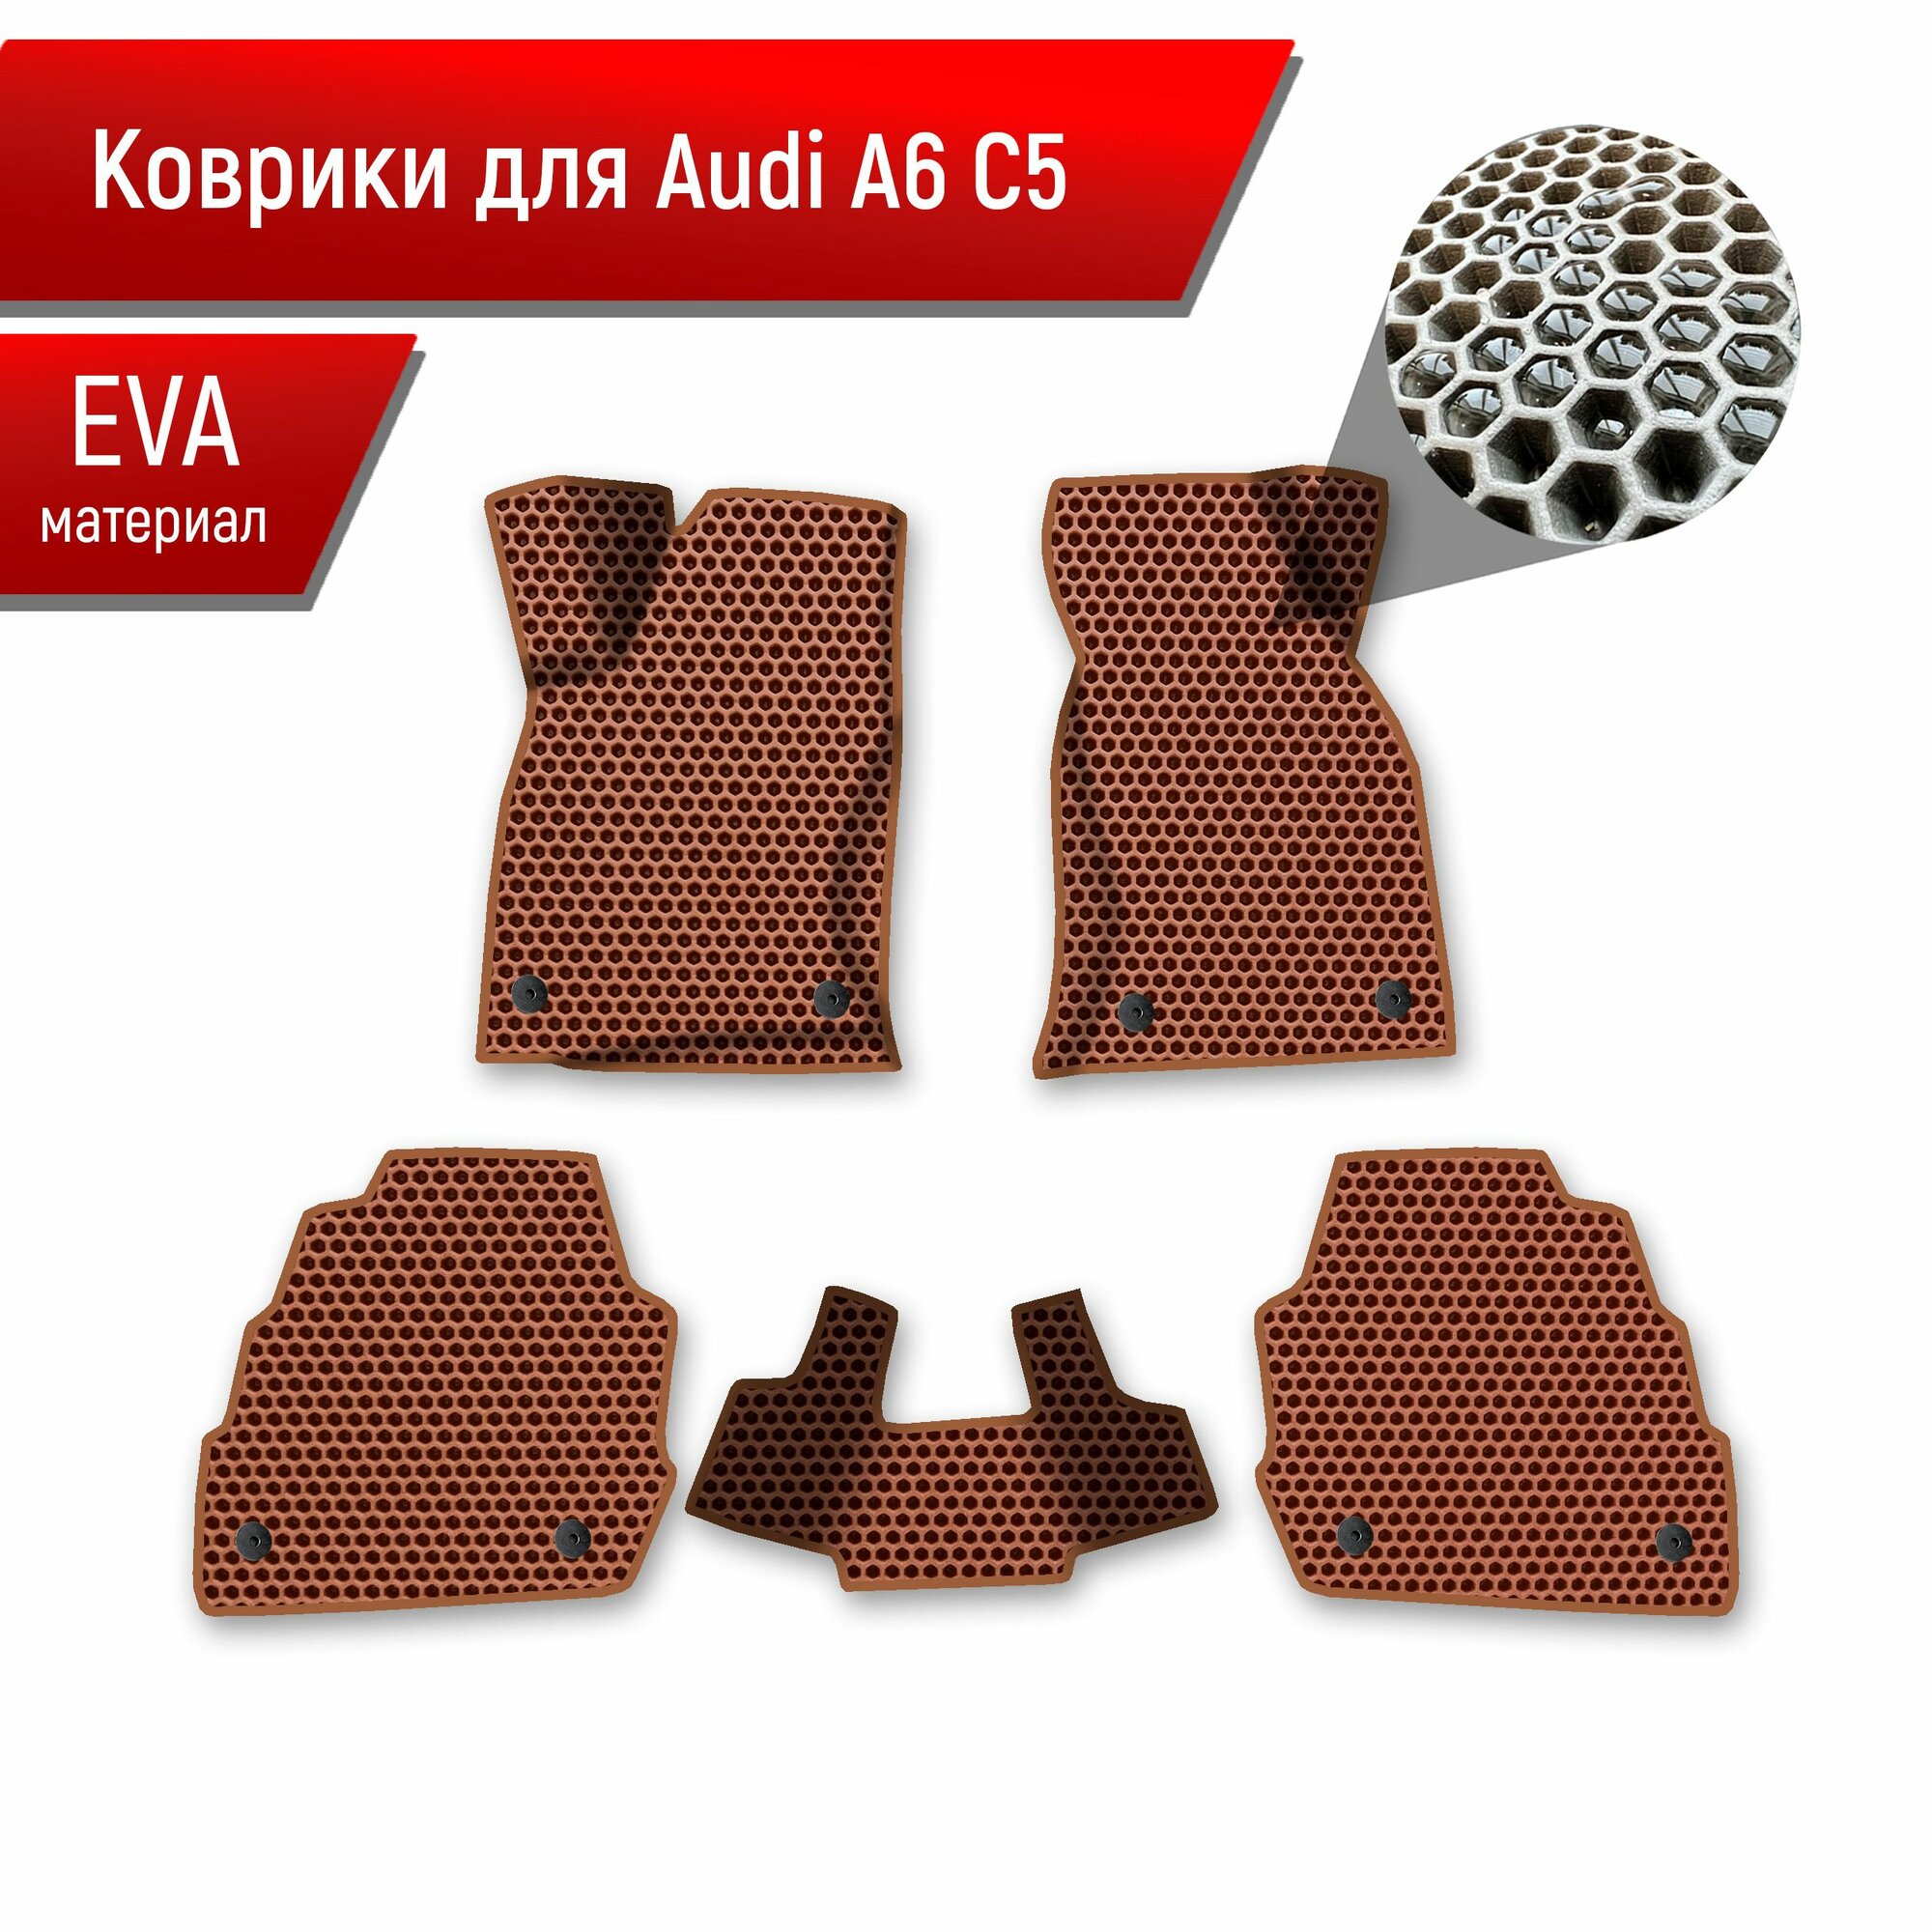 Коврики ЭВА сота для авто Audi A6 C5 / Ауди А6 С5 1997-2004 Г. В. Коричневый с Коричневым кантом